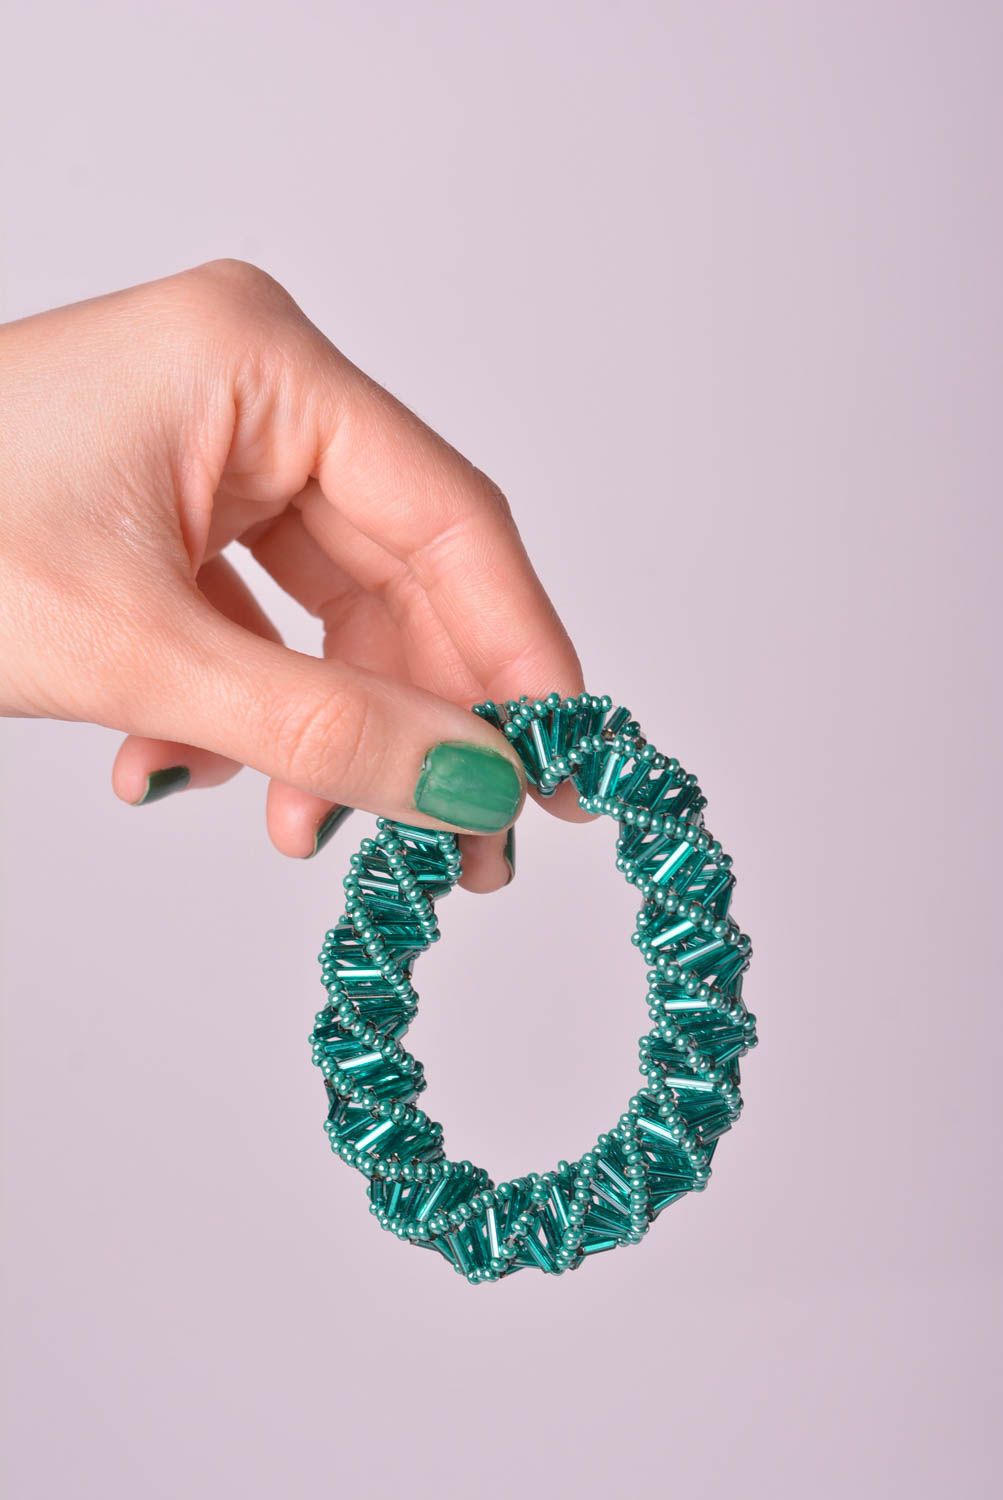 Браслет из бисера хэнд мэйд модный браслет зеленый стильное украшение из бисера фото 2